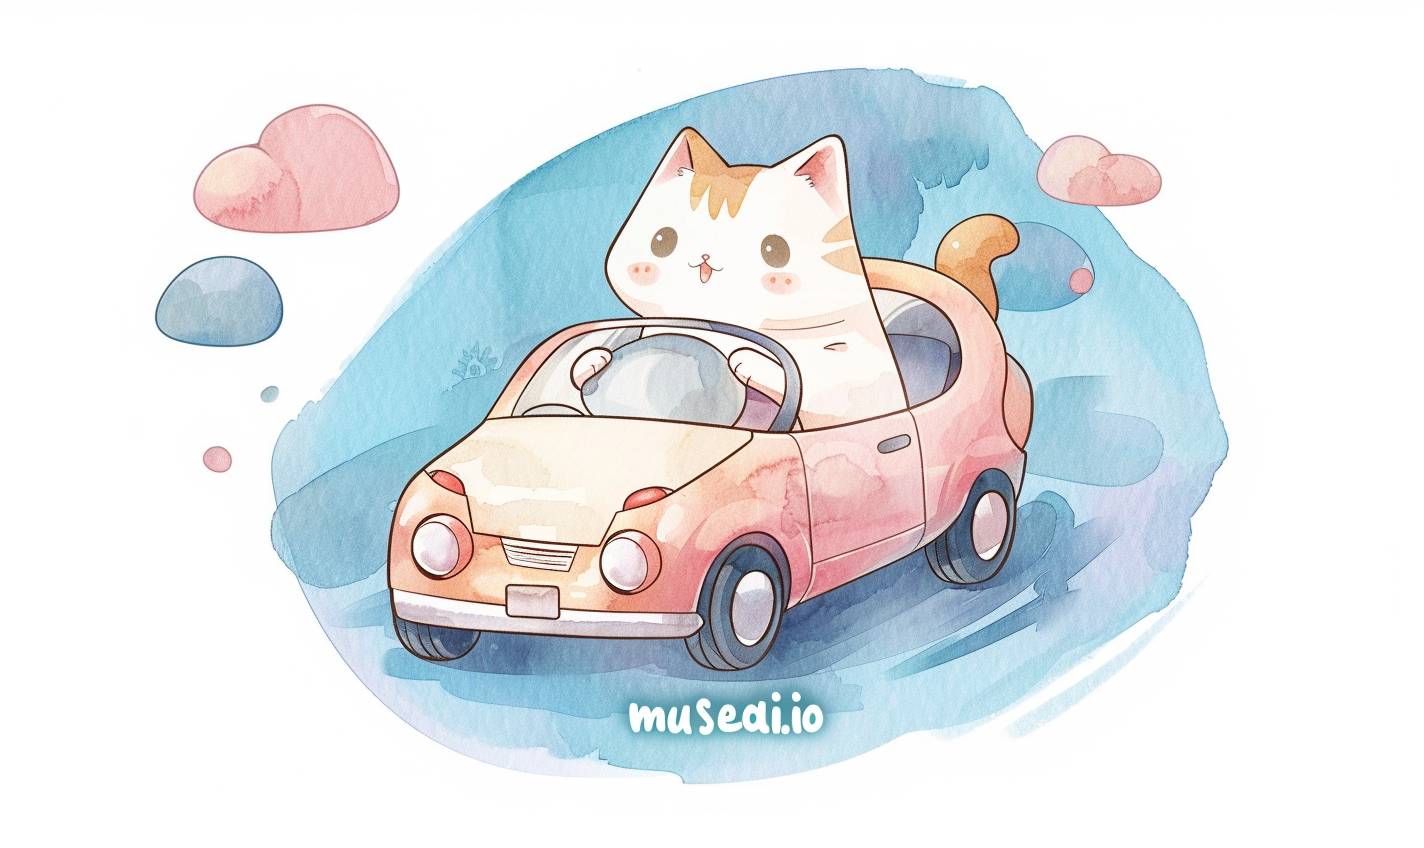 물감 스타일의 2D 평면 일러스트 티셔츠 디자인에서 귀여운 고양이가 작은 차 안에 있으며 “musesai.io”라는 텍스트가 쓰여 있습니다